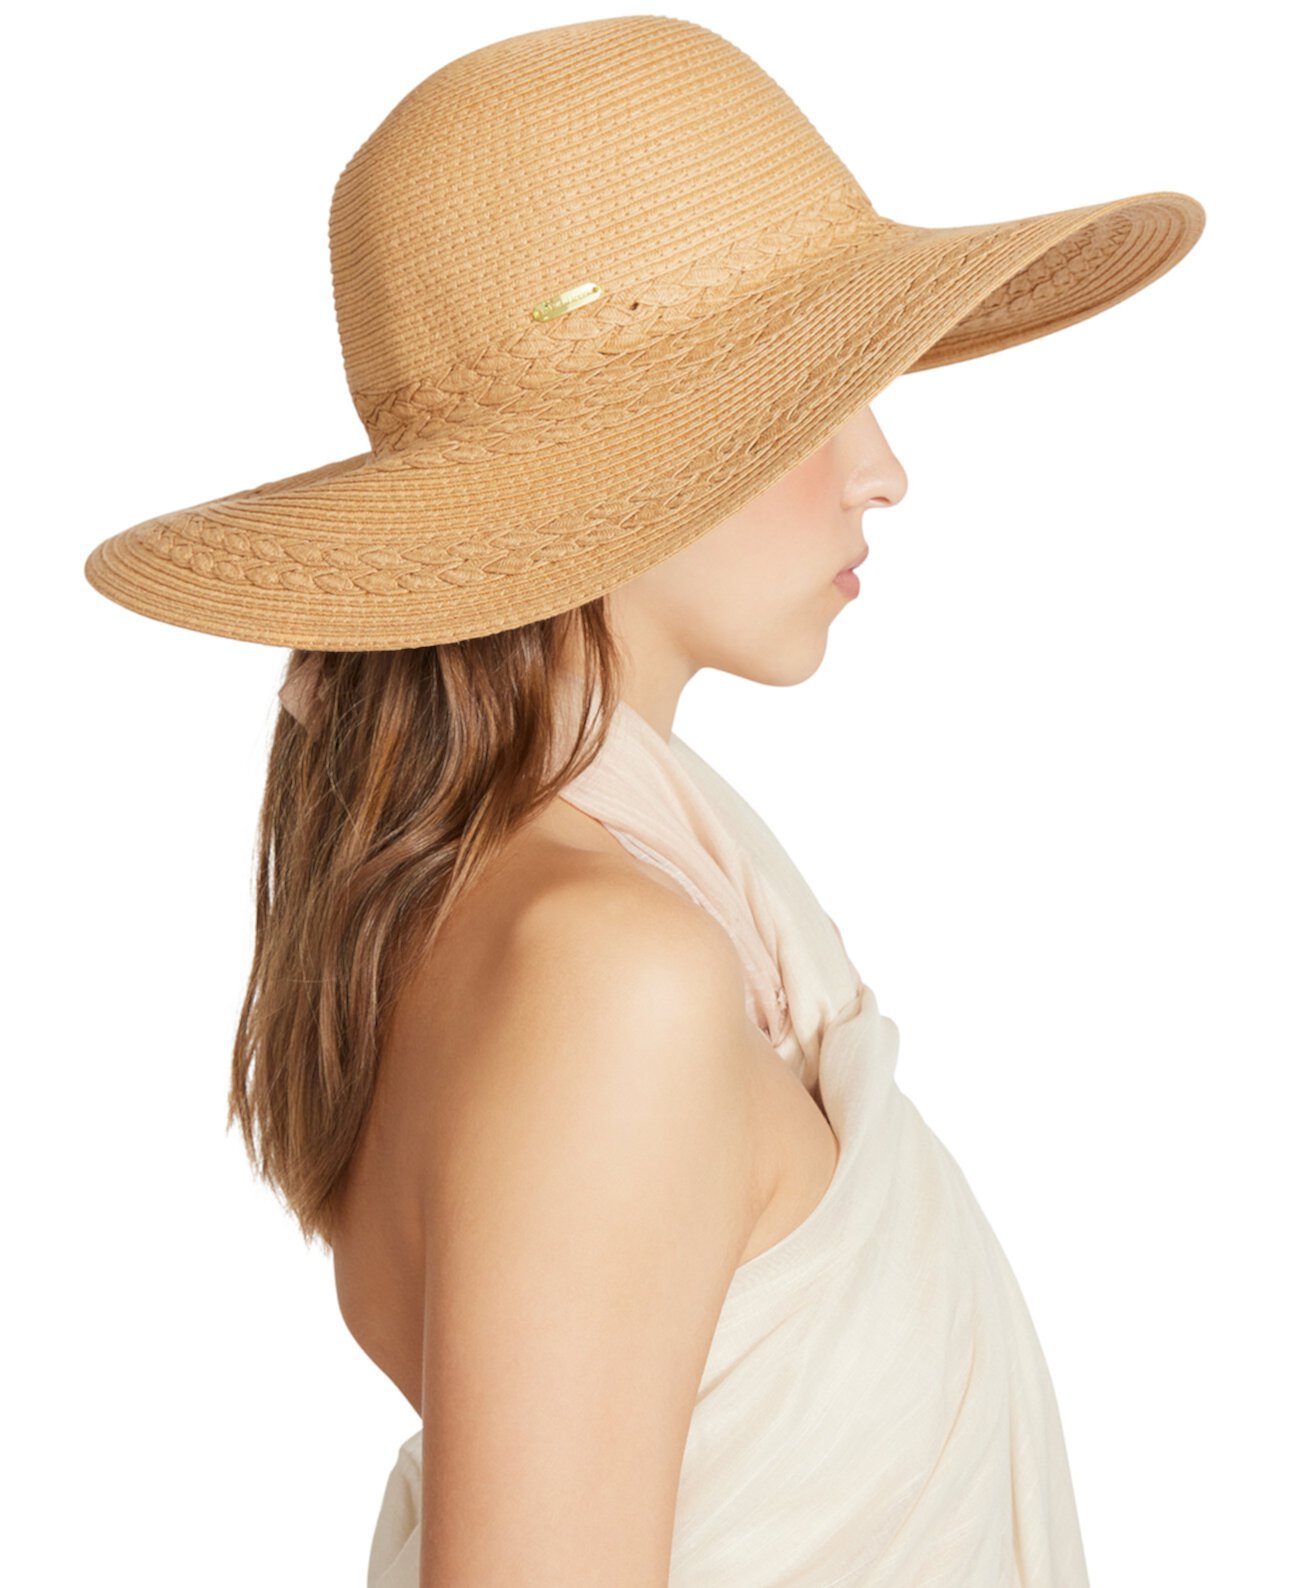 Женская плетеная соломенная шляпа с дисками Steve Madden